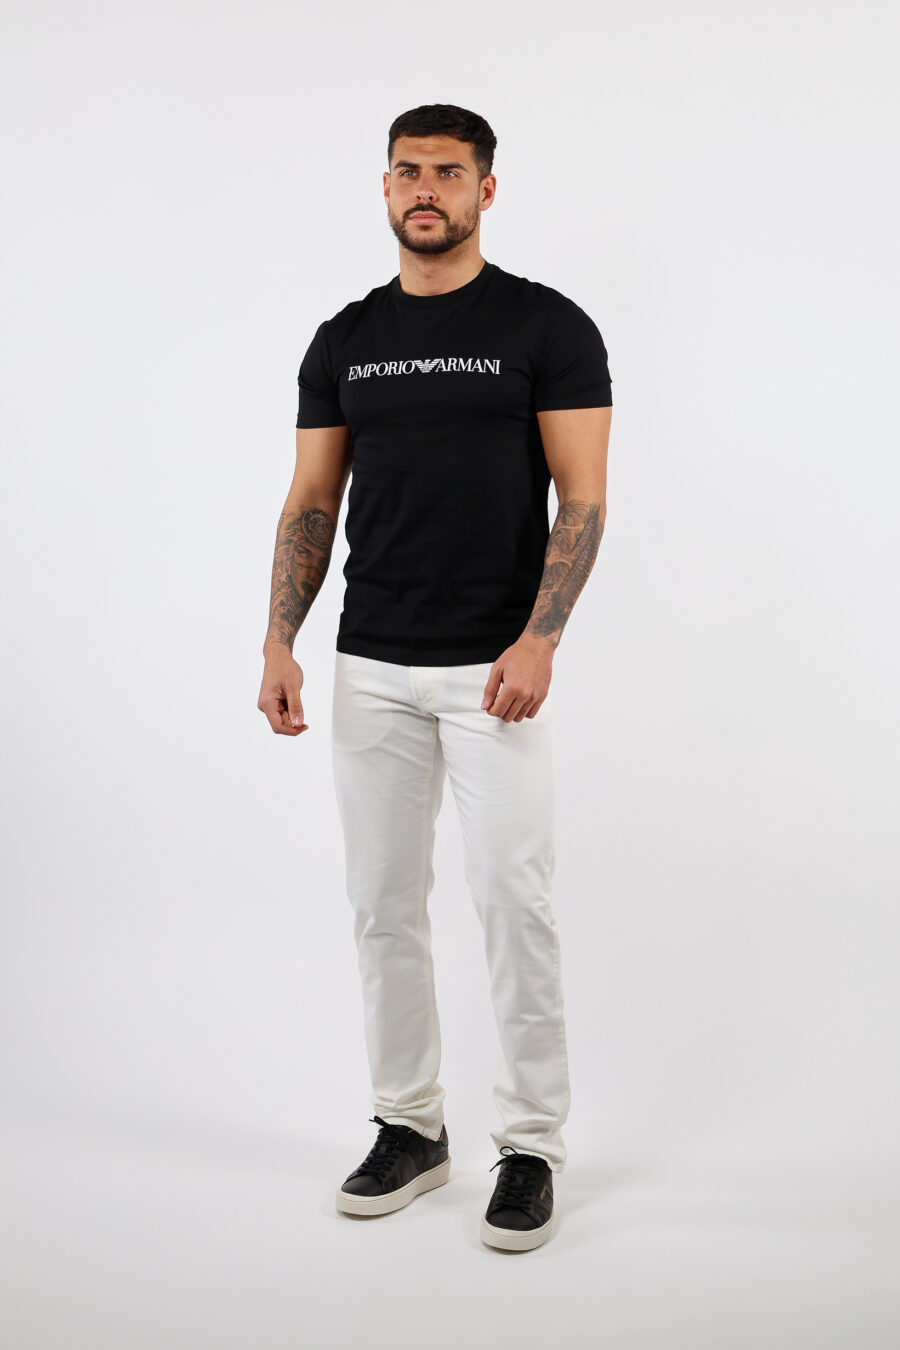 Schwarzes T-Shirt mit weißer Aufschrift - BLS Fashion 87